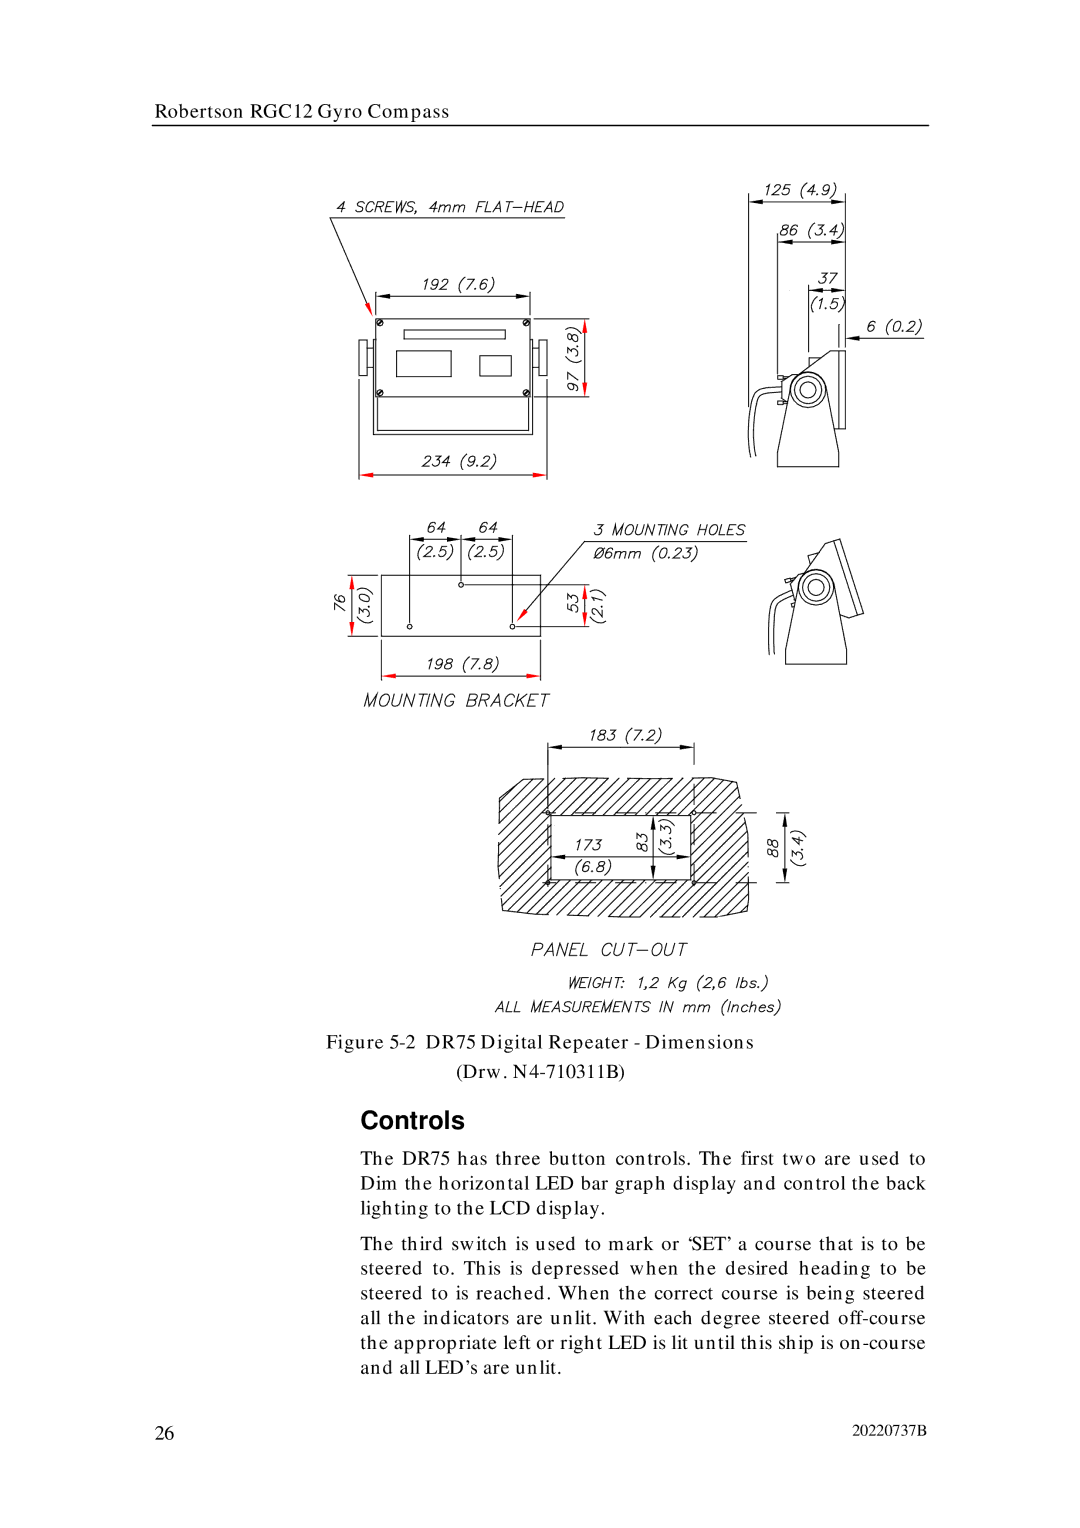 Simrad RGC12 manual Controls, DR75 Digital Repeater Dimensions 